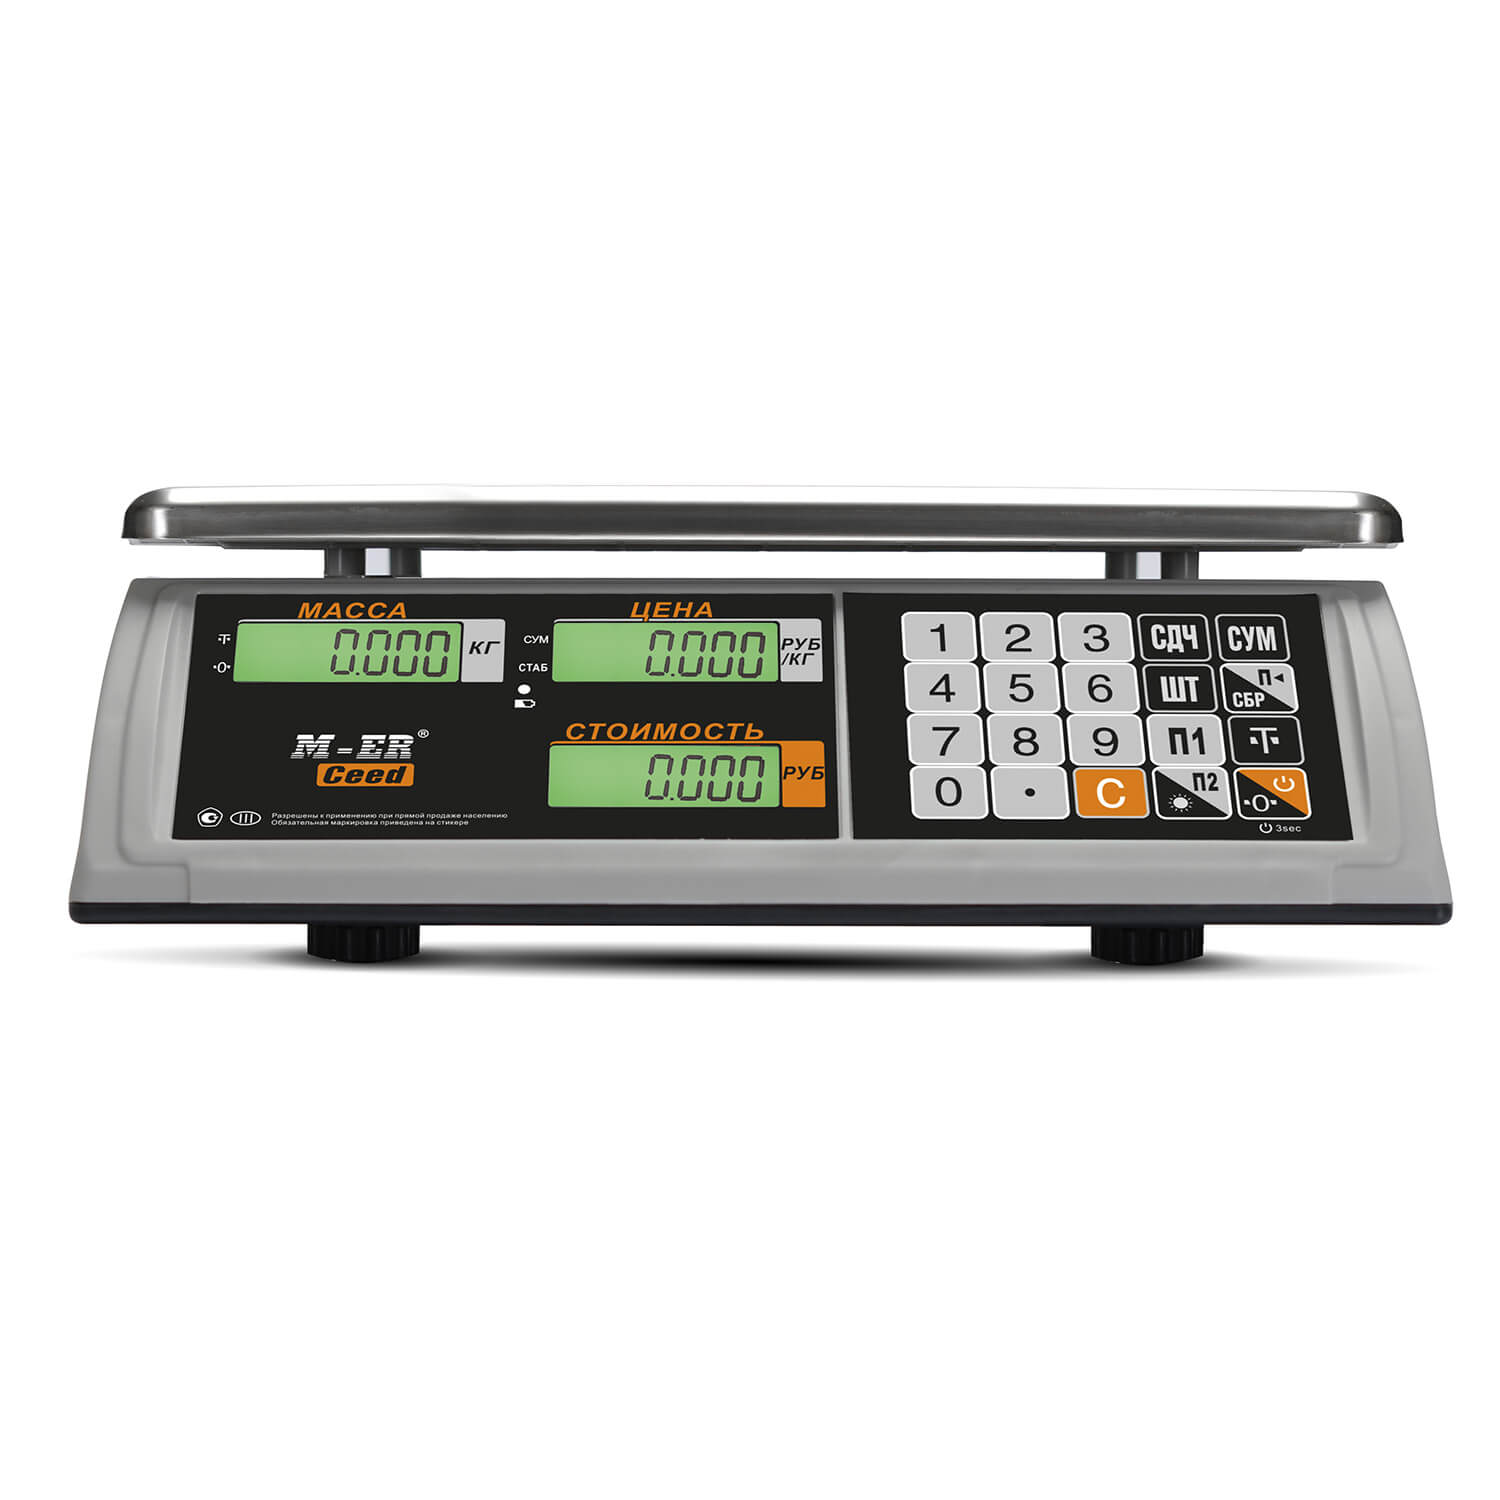 Торговые настольные весы M-ER 327 AC-32.5 "Ceed" LCD (3019)